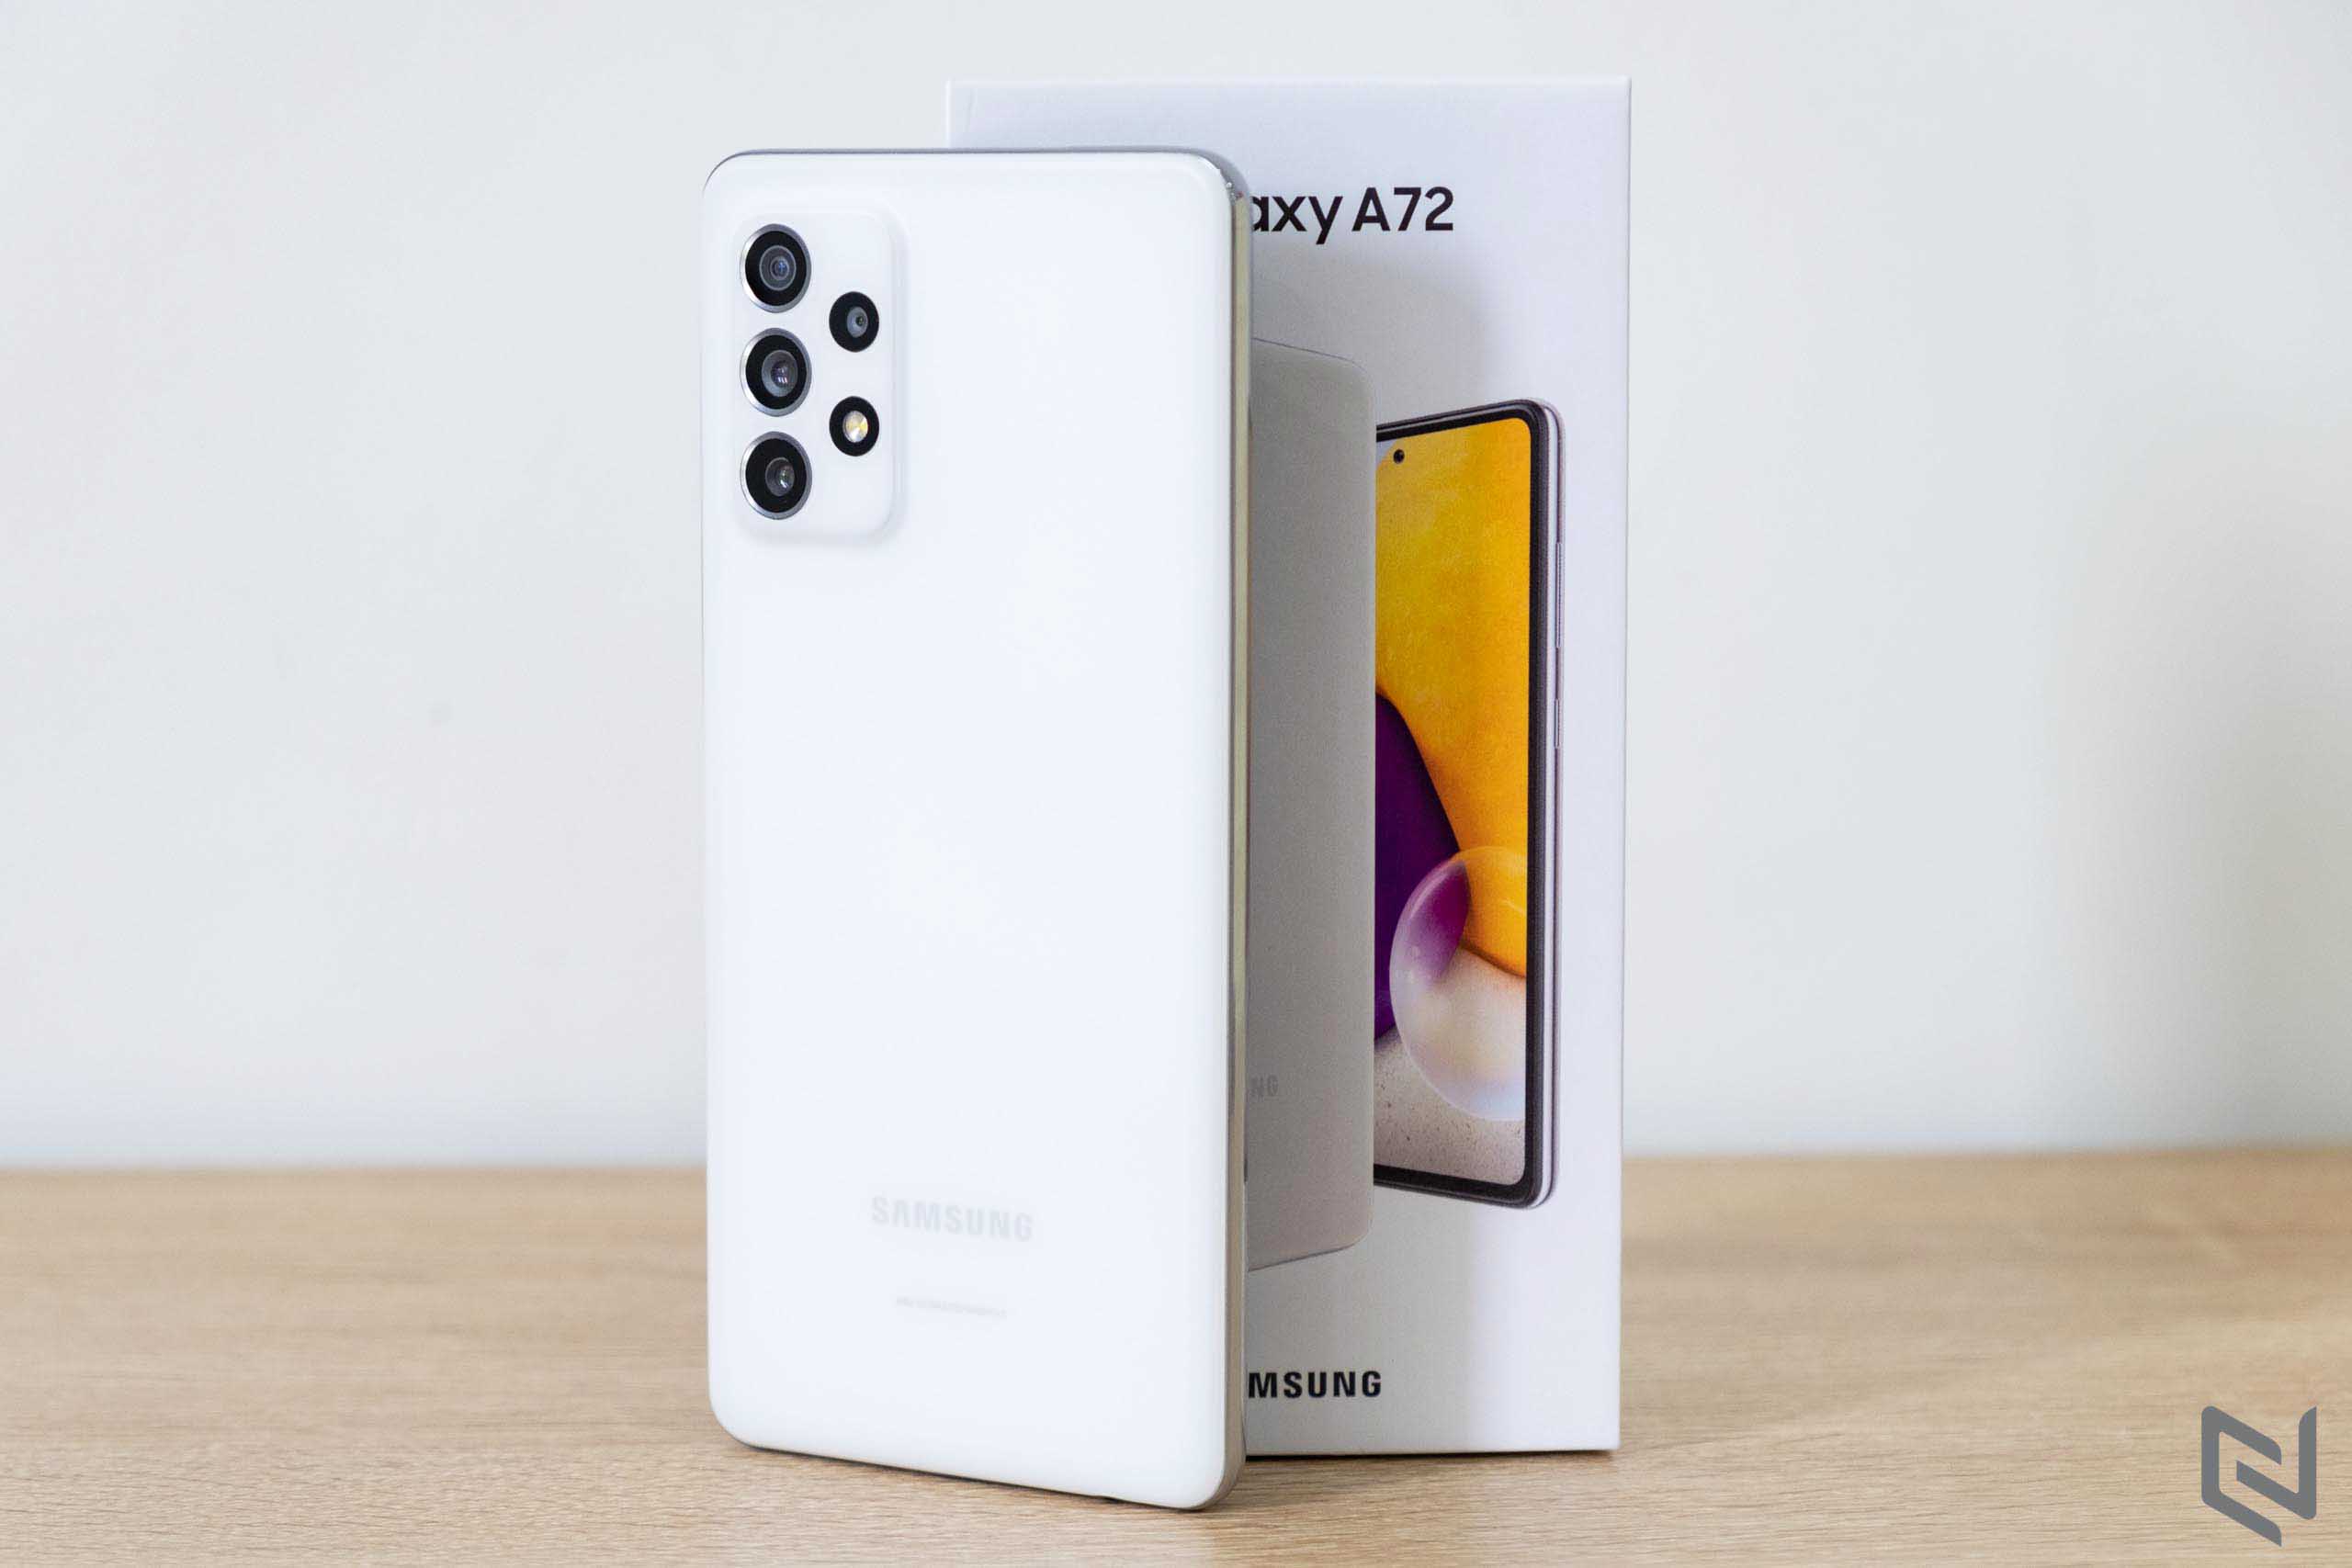 Mở hộp Samsung Galaxy A72: Rất đẹp, 4 camera với đa dạng chế độ chụp